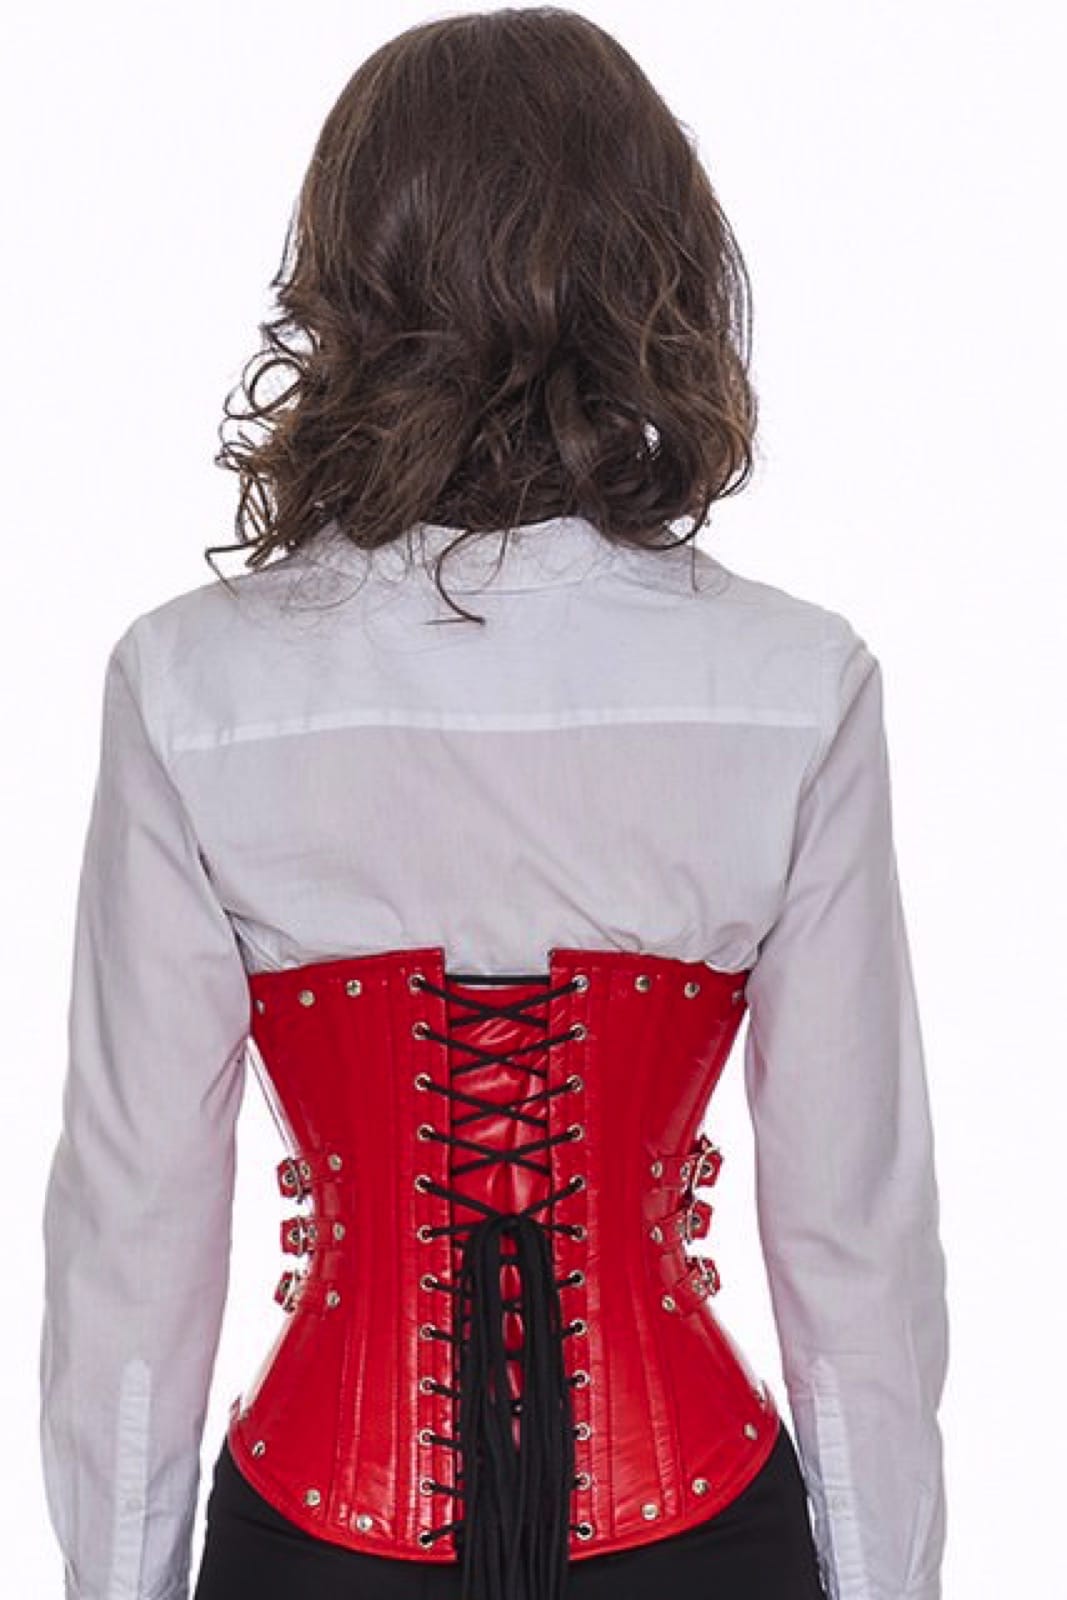 Leren corset rood onderborst met studs en zijdelingse gespen Korset lg23